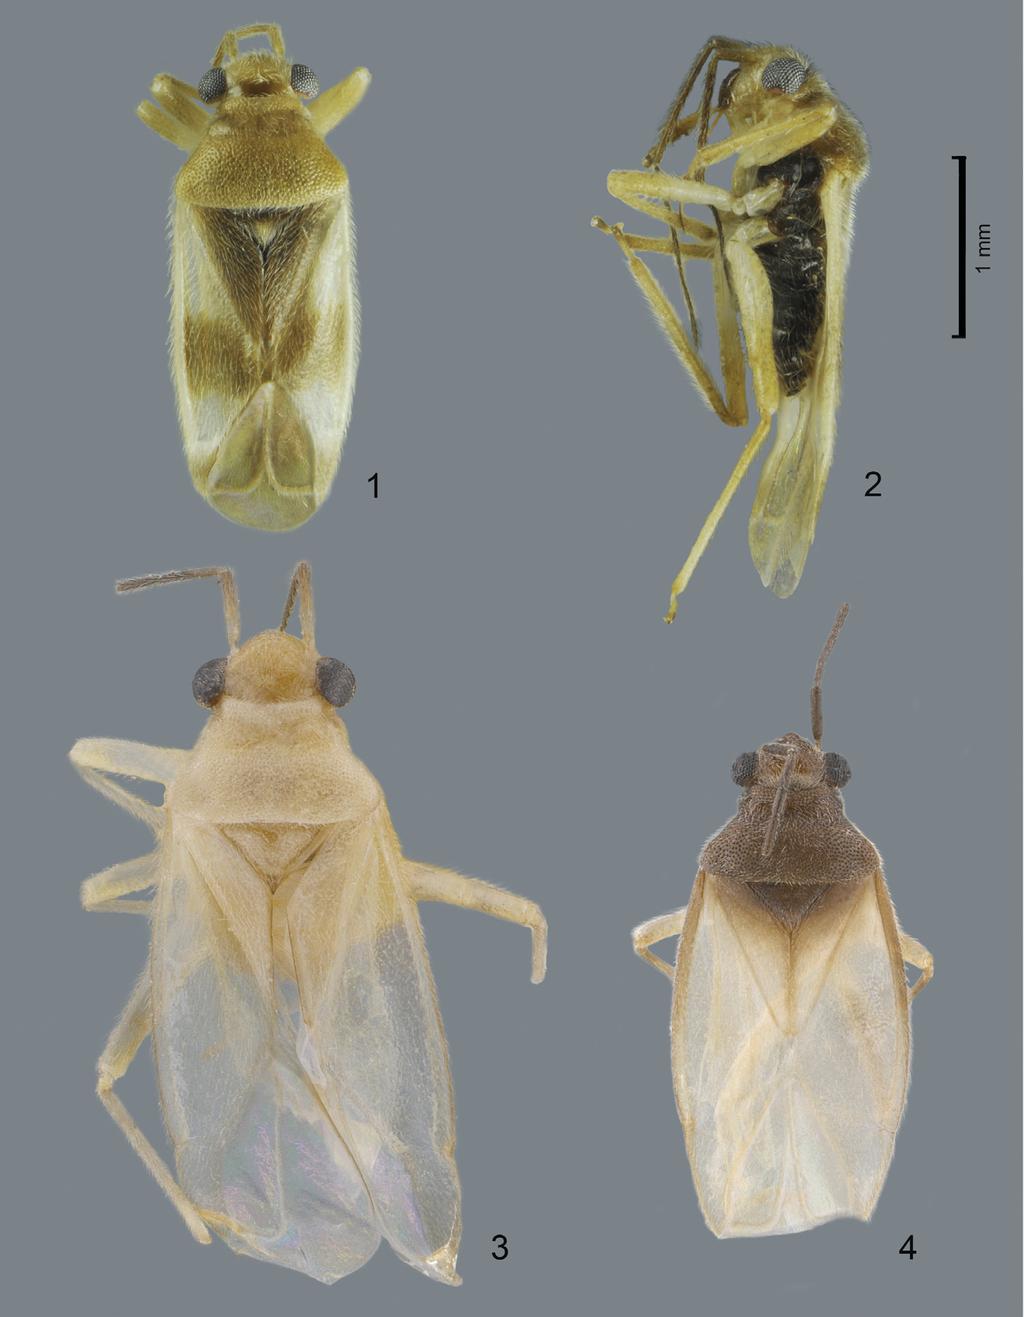 Acta Entomologica Musei Nationalis Pragae, 56(1), 2016 53 Figs 1 4. Habitus of Ambunticoris spp. 1 2 Ambunticoris sulawesicus sp. nov., male.